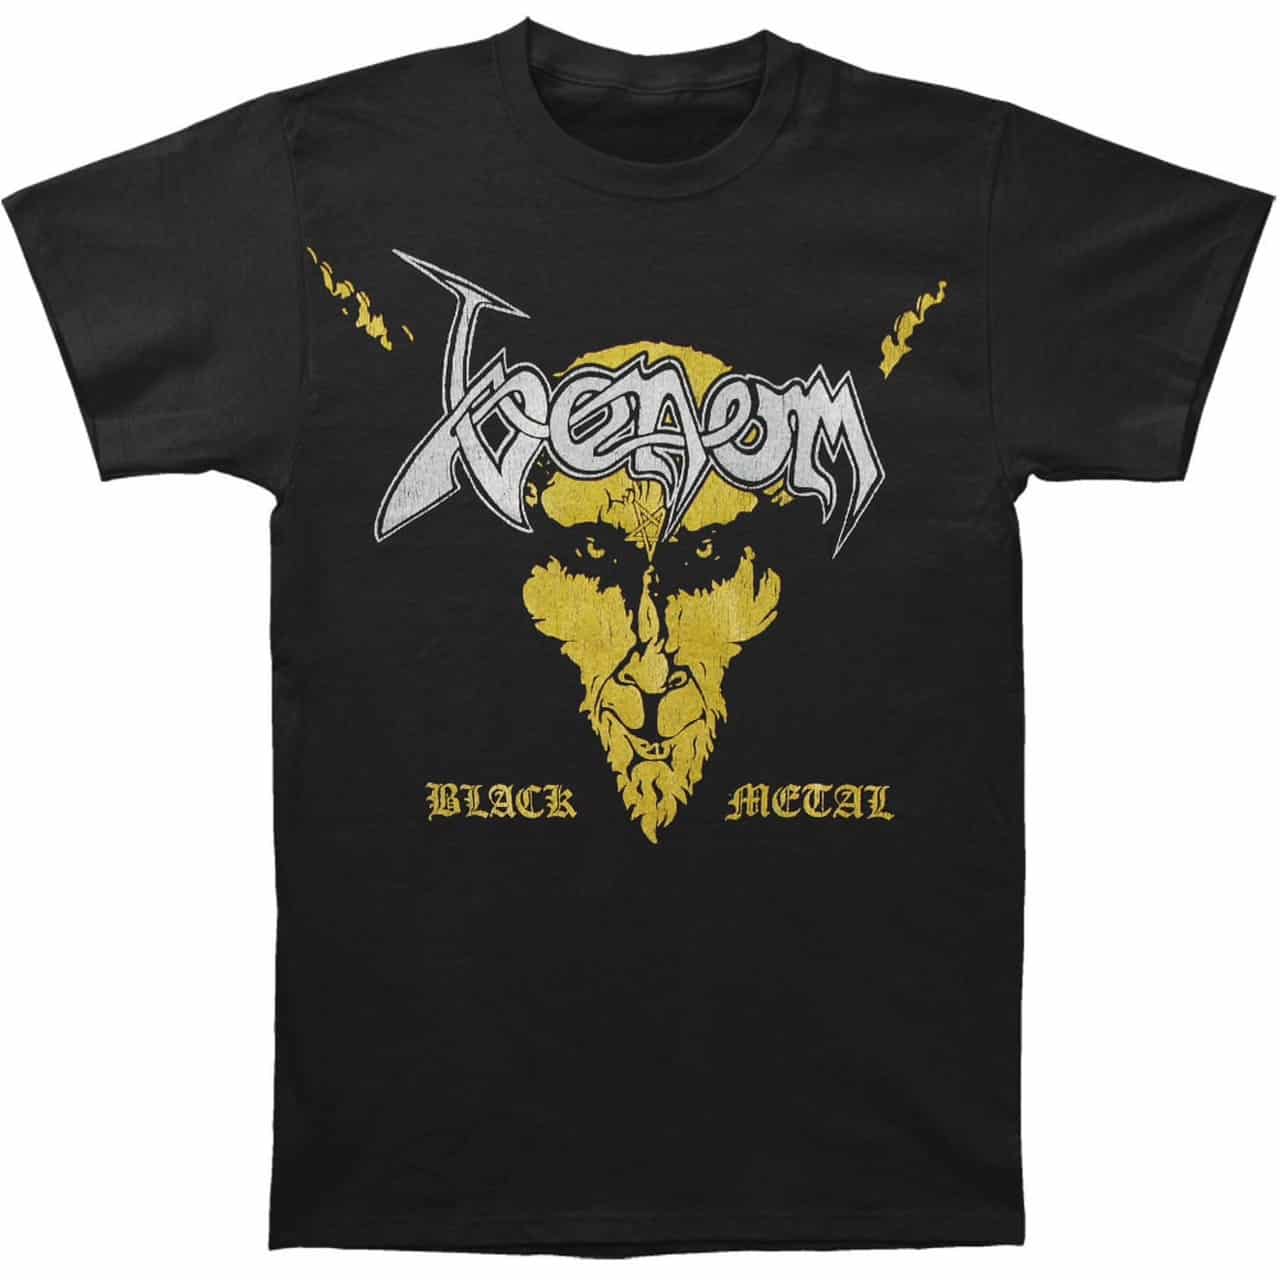 Venom Black Metal T-Shirt